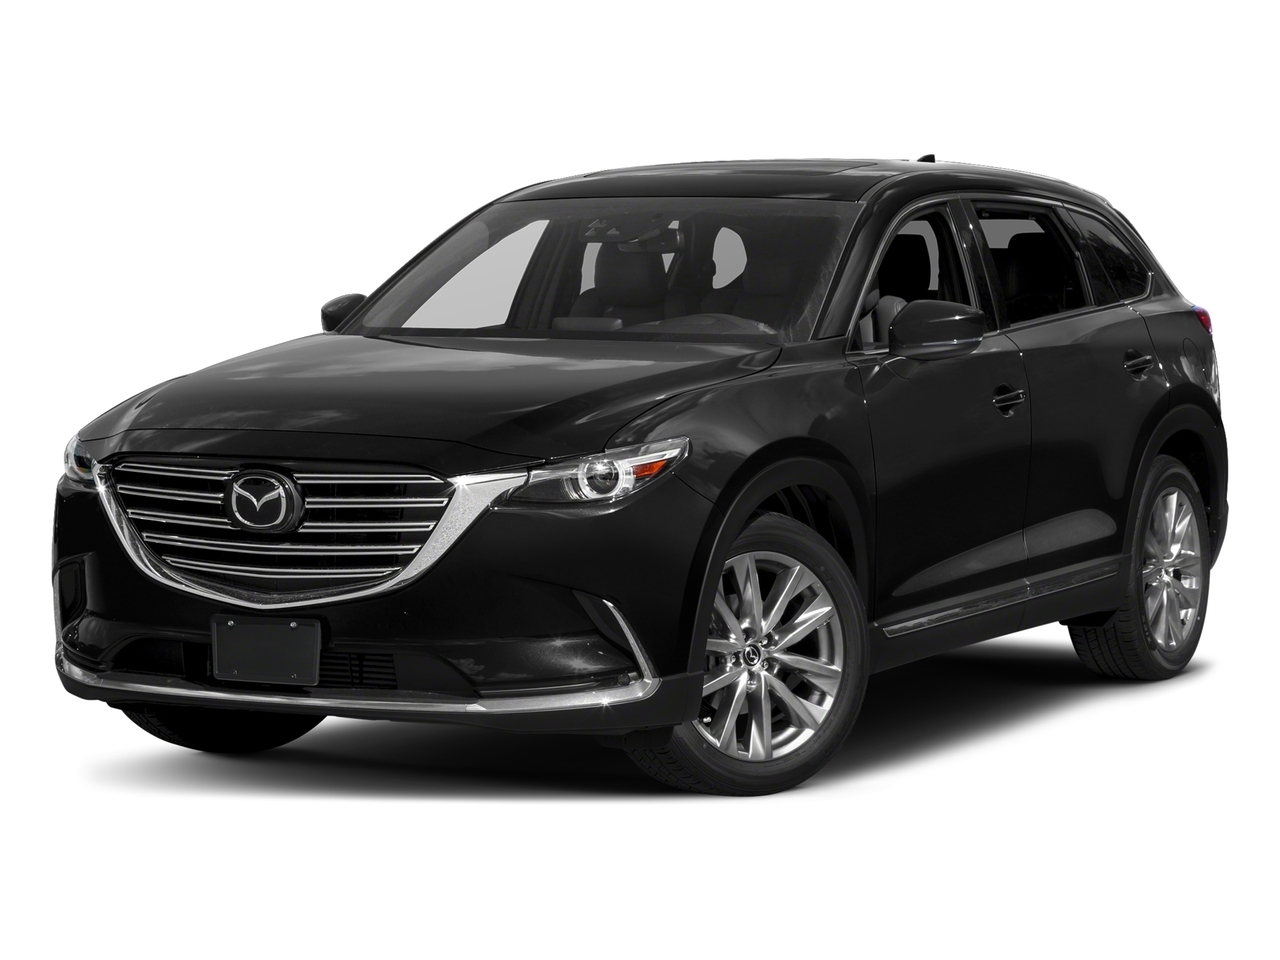 2016 Mazda CX-9 Signature | New Rotors | New Drive Belts